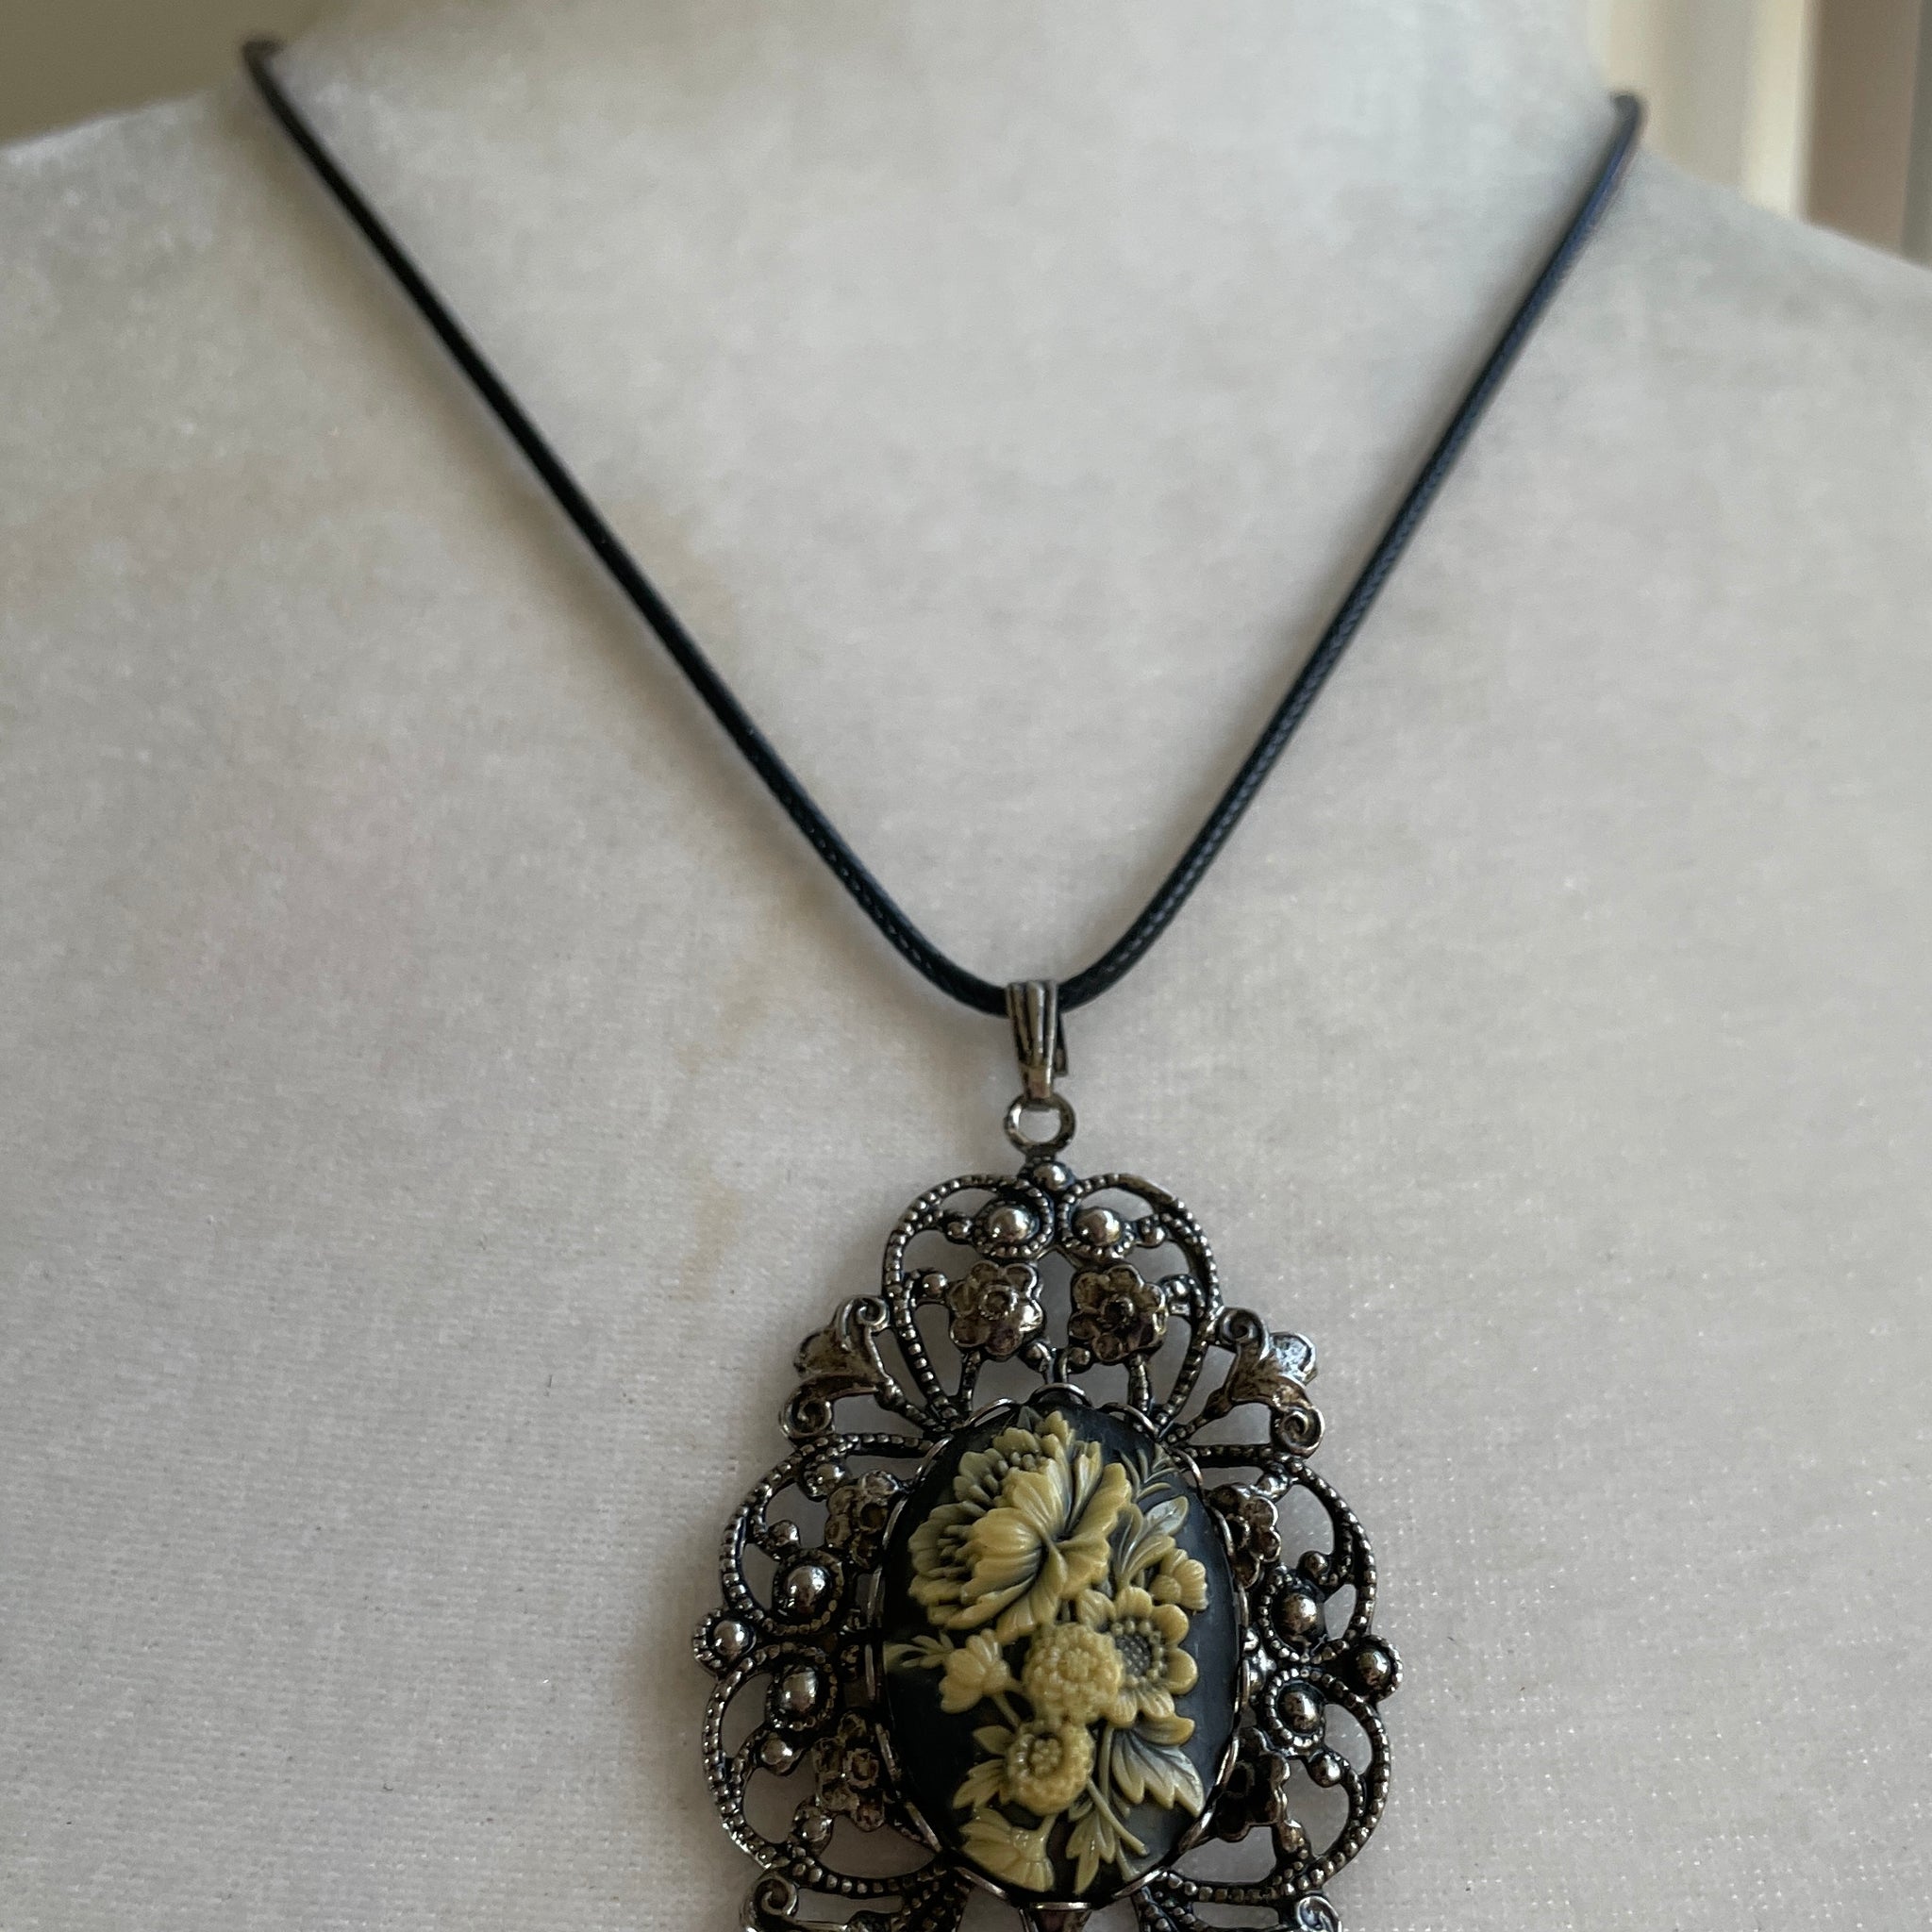 Vintage flower pendant necklace 